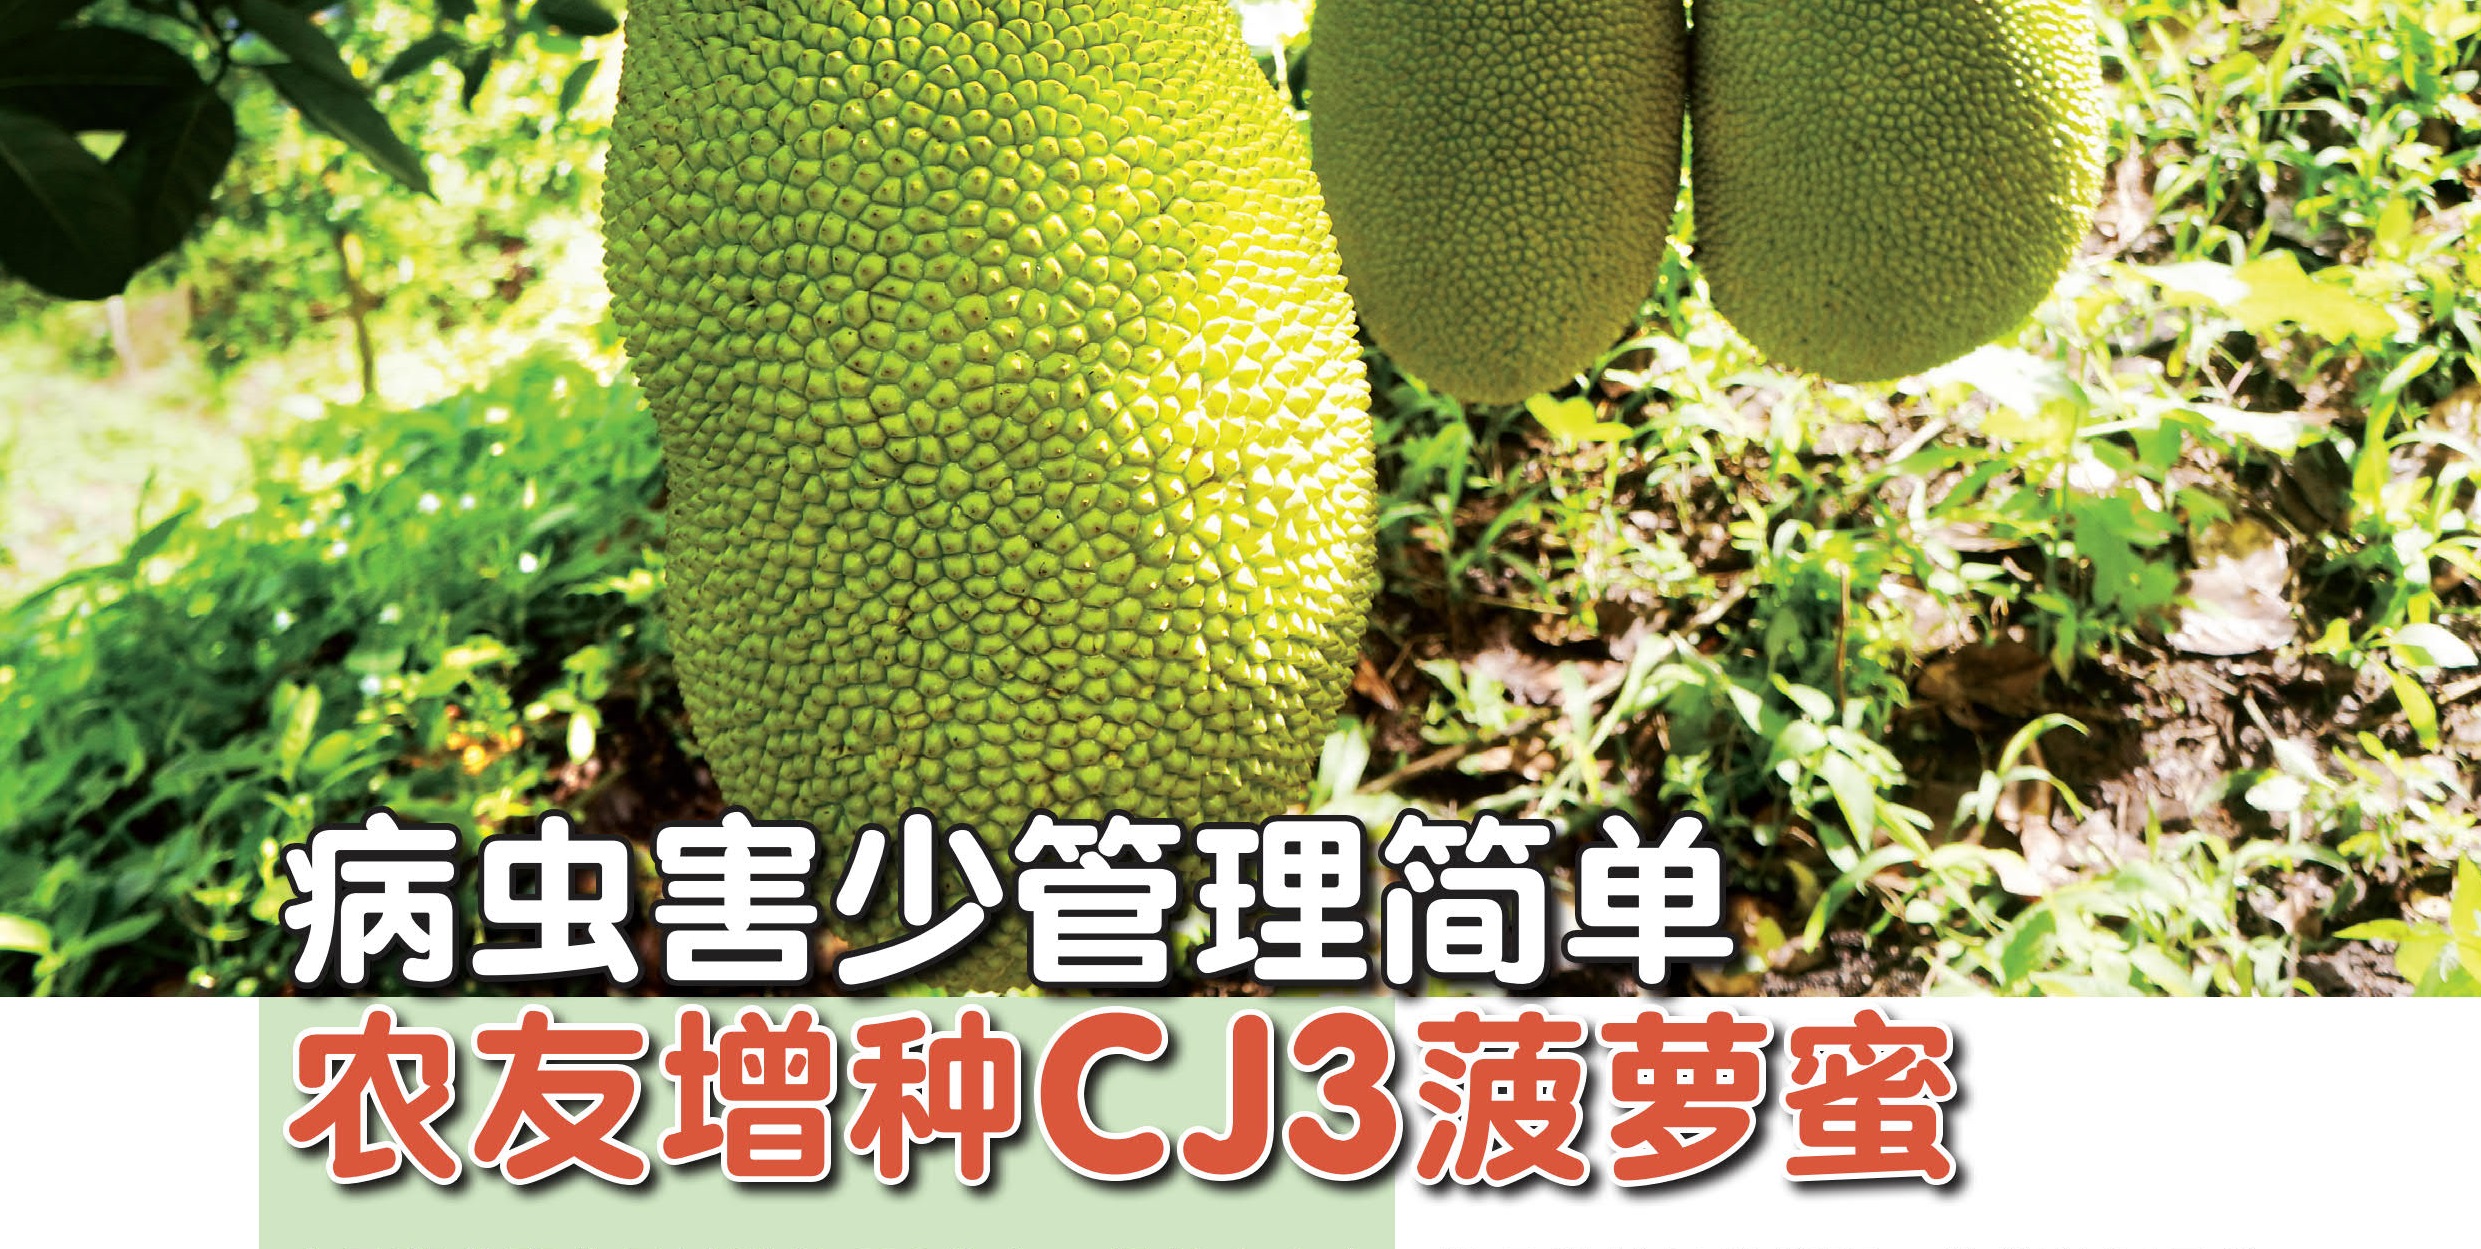 病虫害少管理简单 农友增种CJ3菠萝蜜 - 农牧世界